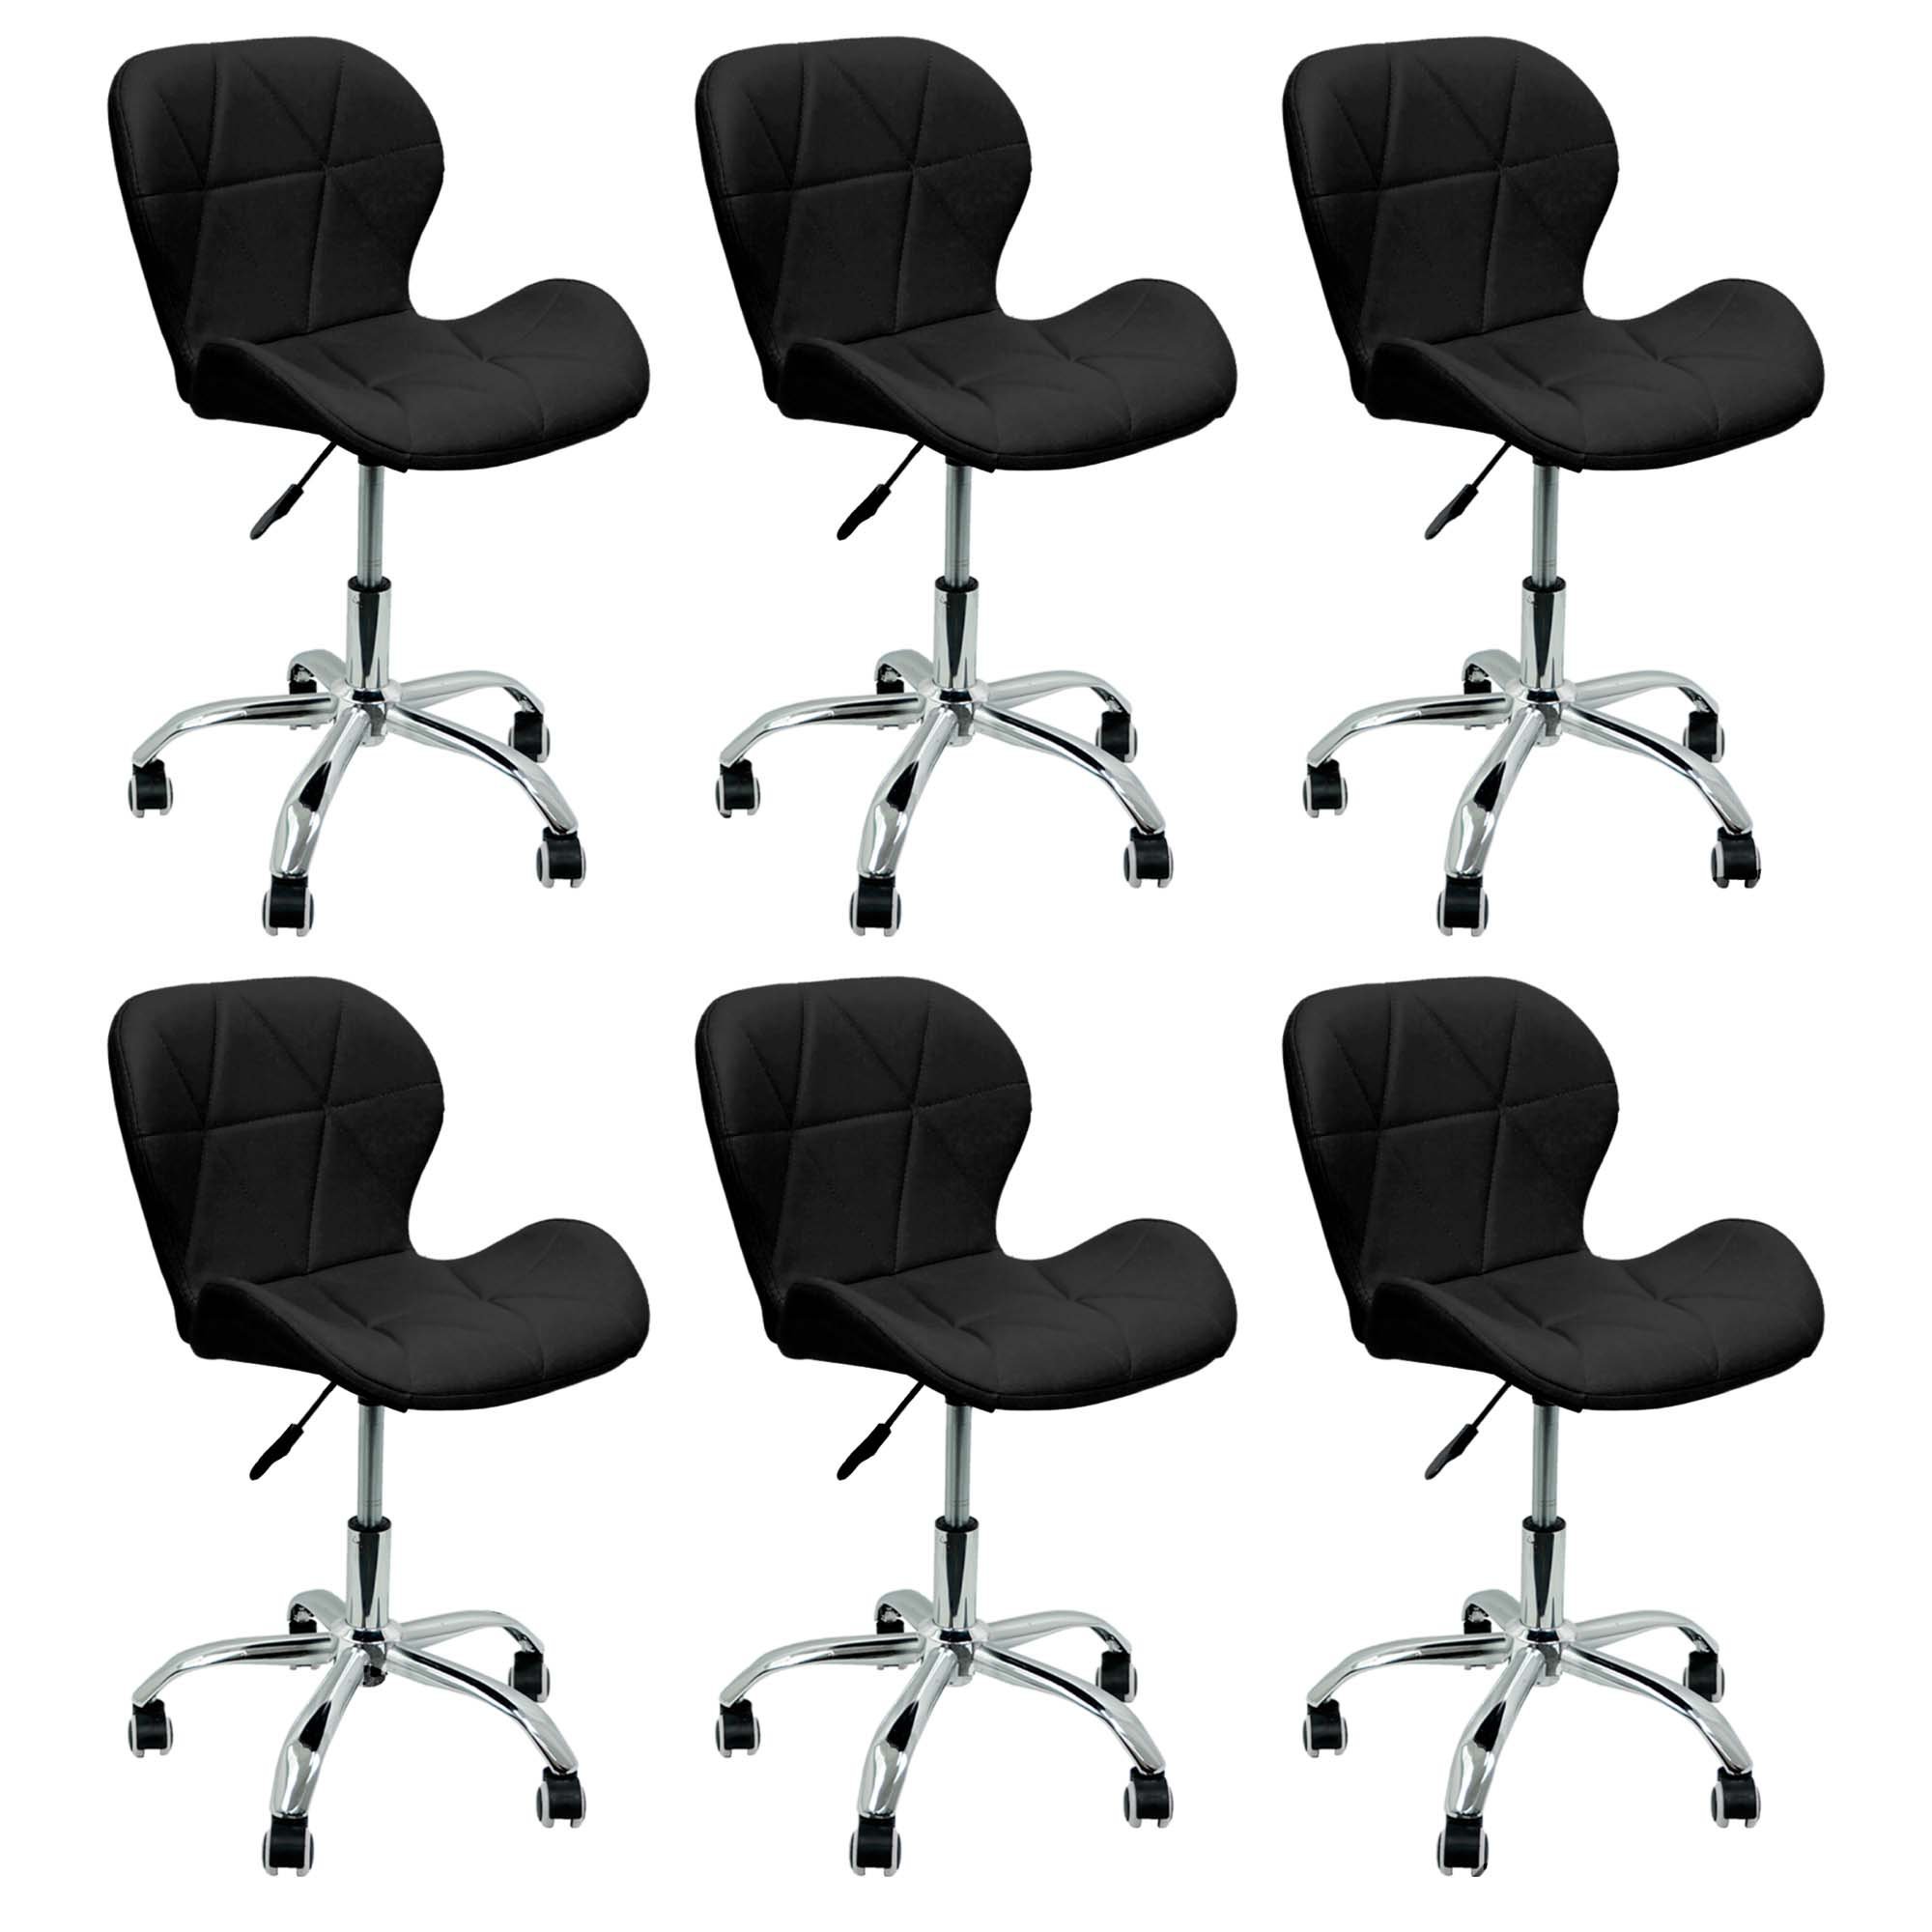 Kit 6 Cadeiras Slim Office Estofada Base Giratória Cromada - Preto